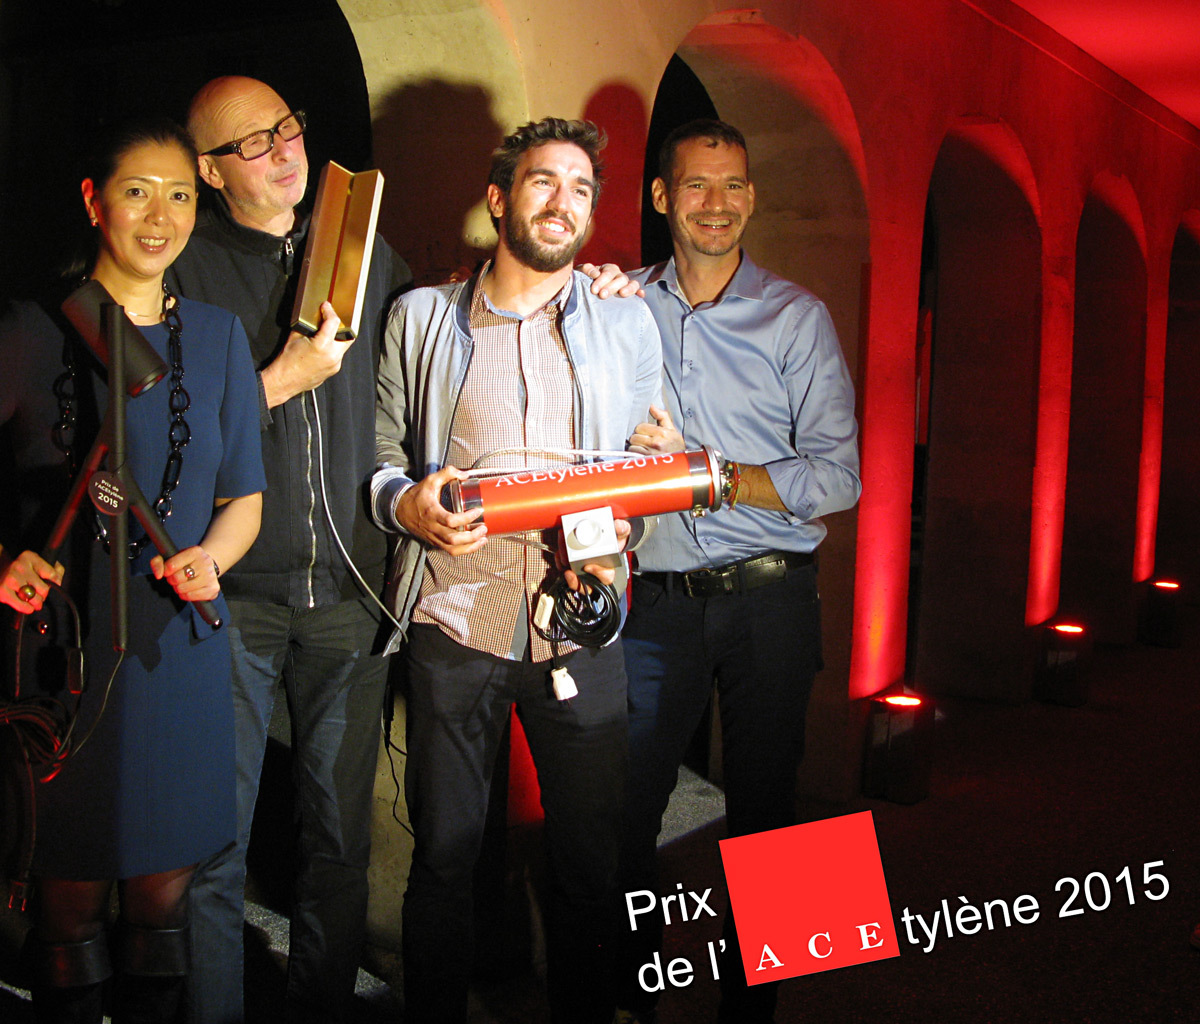 Prix de l'ACEtylène 2015, lauréats concepteurs lumière - Photo ACE